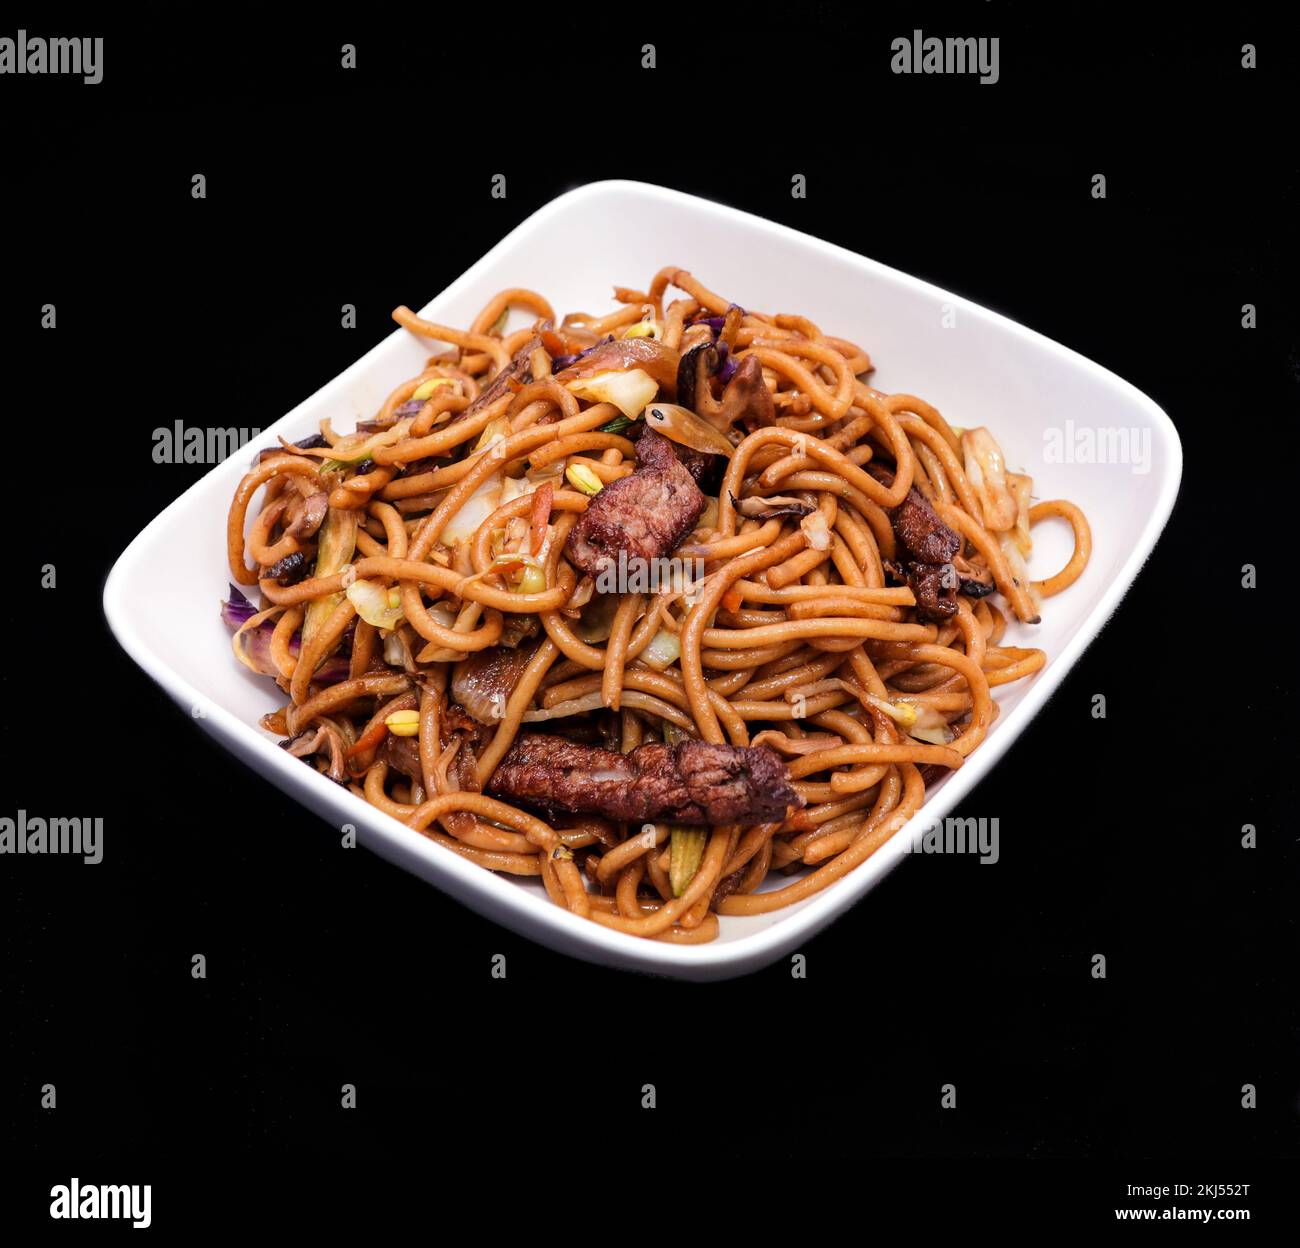 Hochwertige Bilder von chinesischer und japanischer Küche Stockfoto